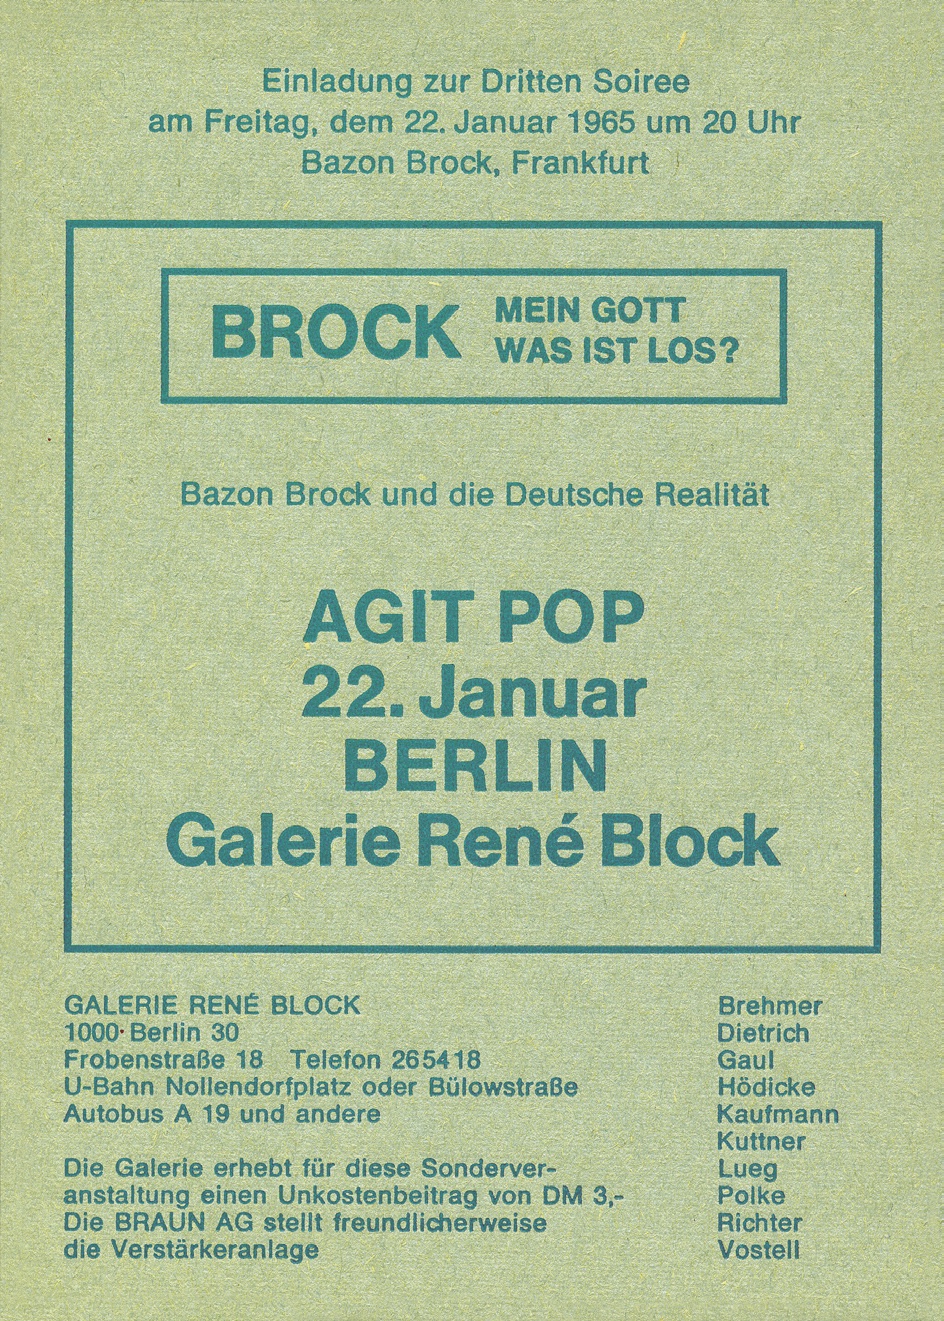 Mein Gott was ist los? | Agit Pop. Dritte Soirée in der Galerie René Block, Berlin 22.01.1965, Bild: Flyer.